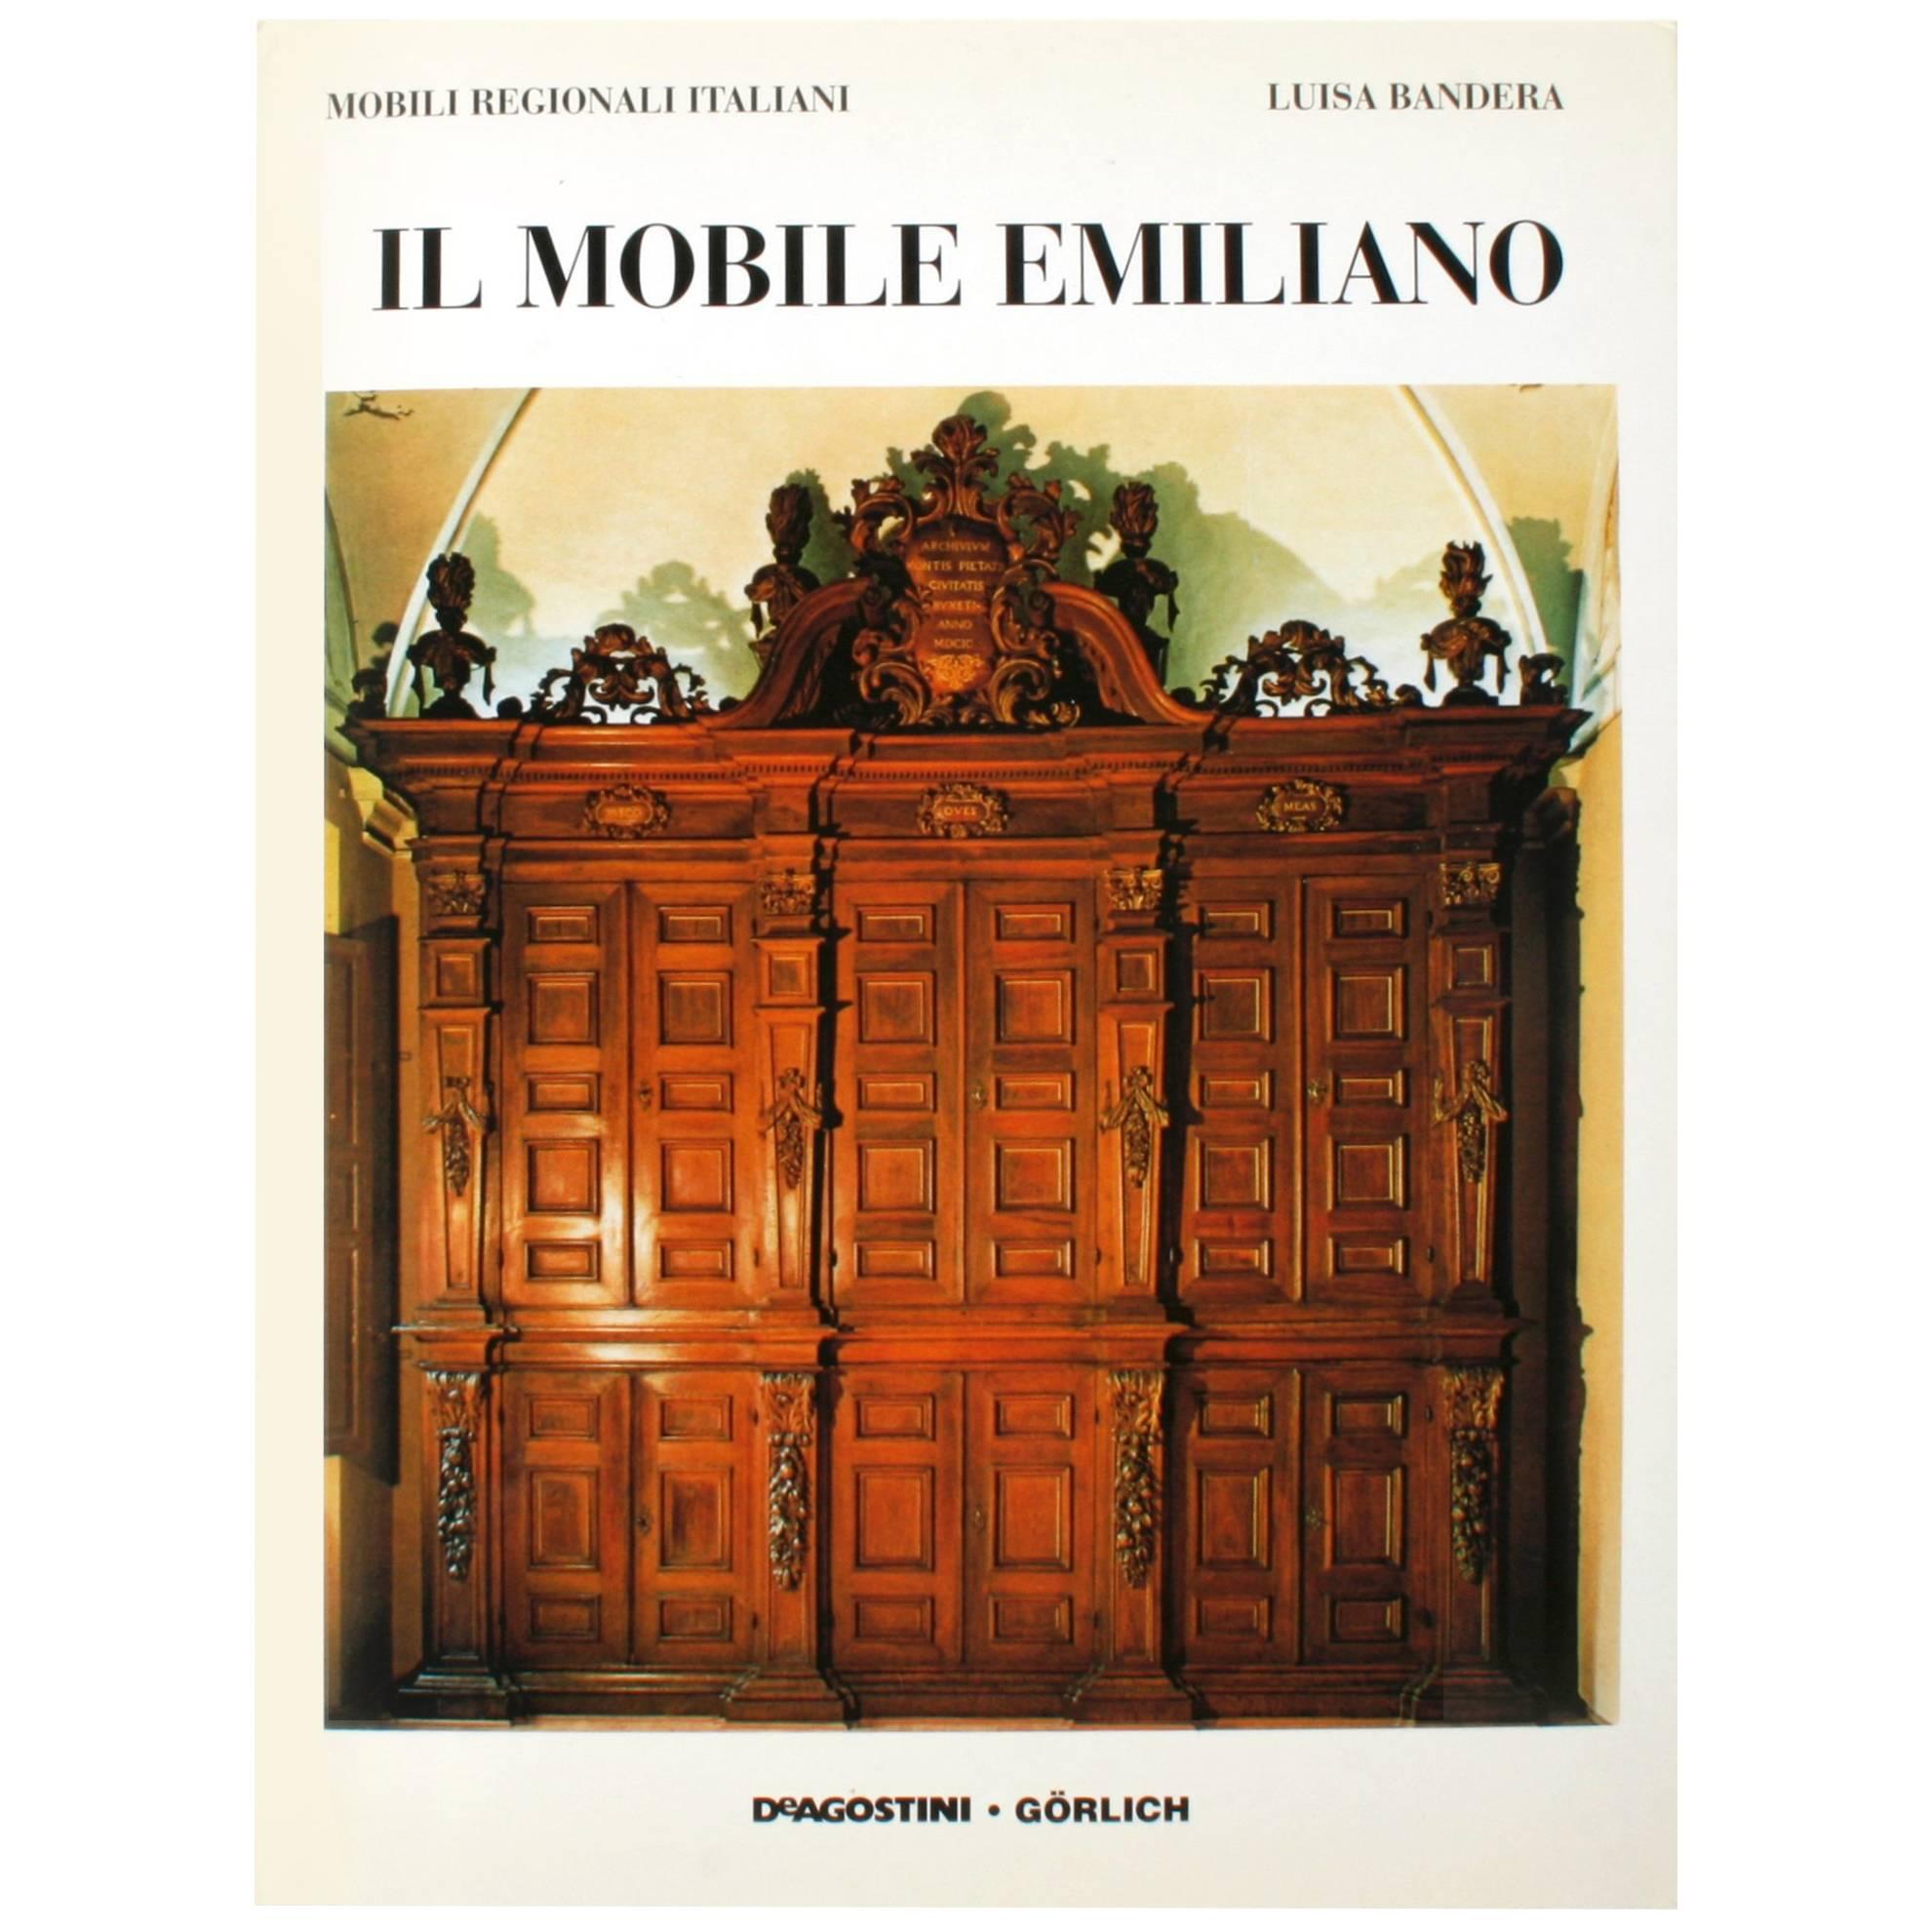 "IL MOBILE EMILIANO" book by Luisa Bandera